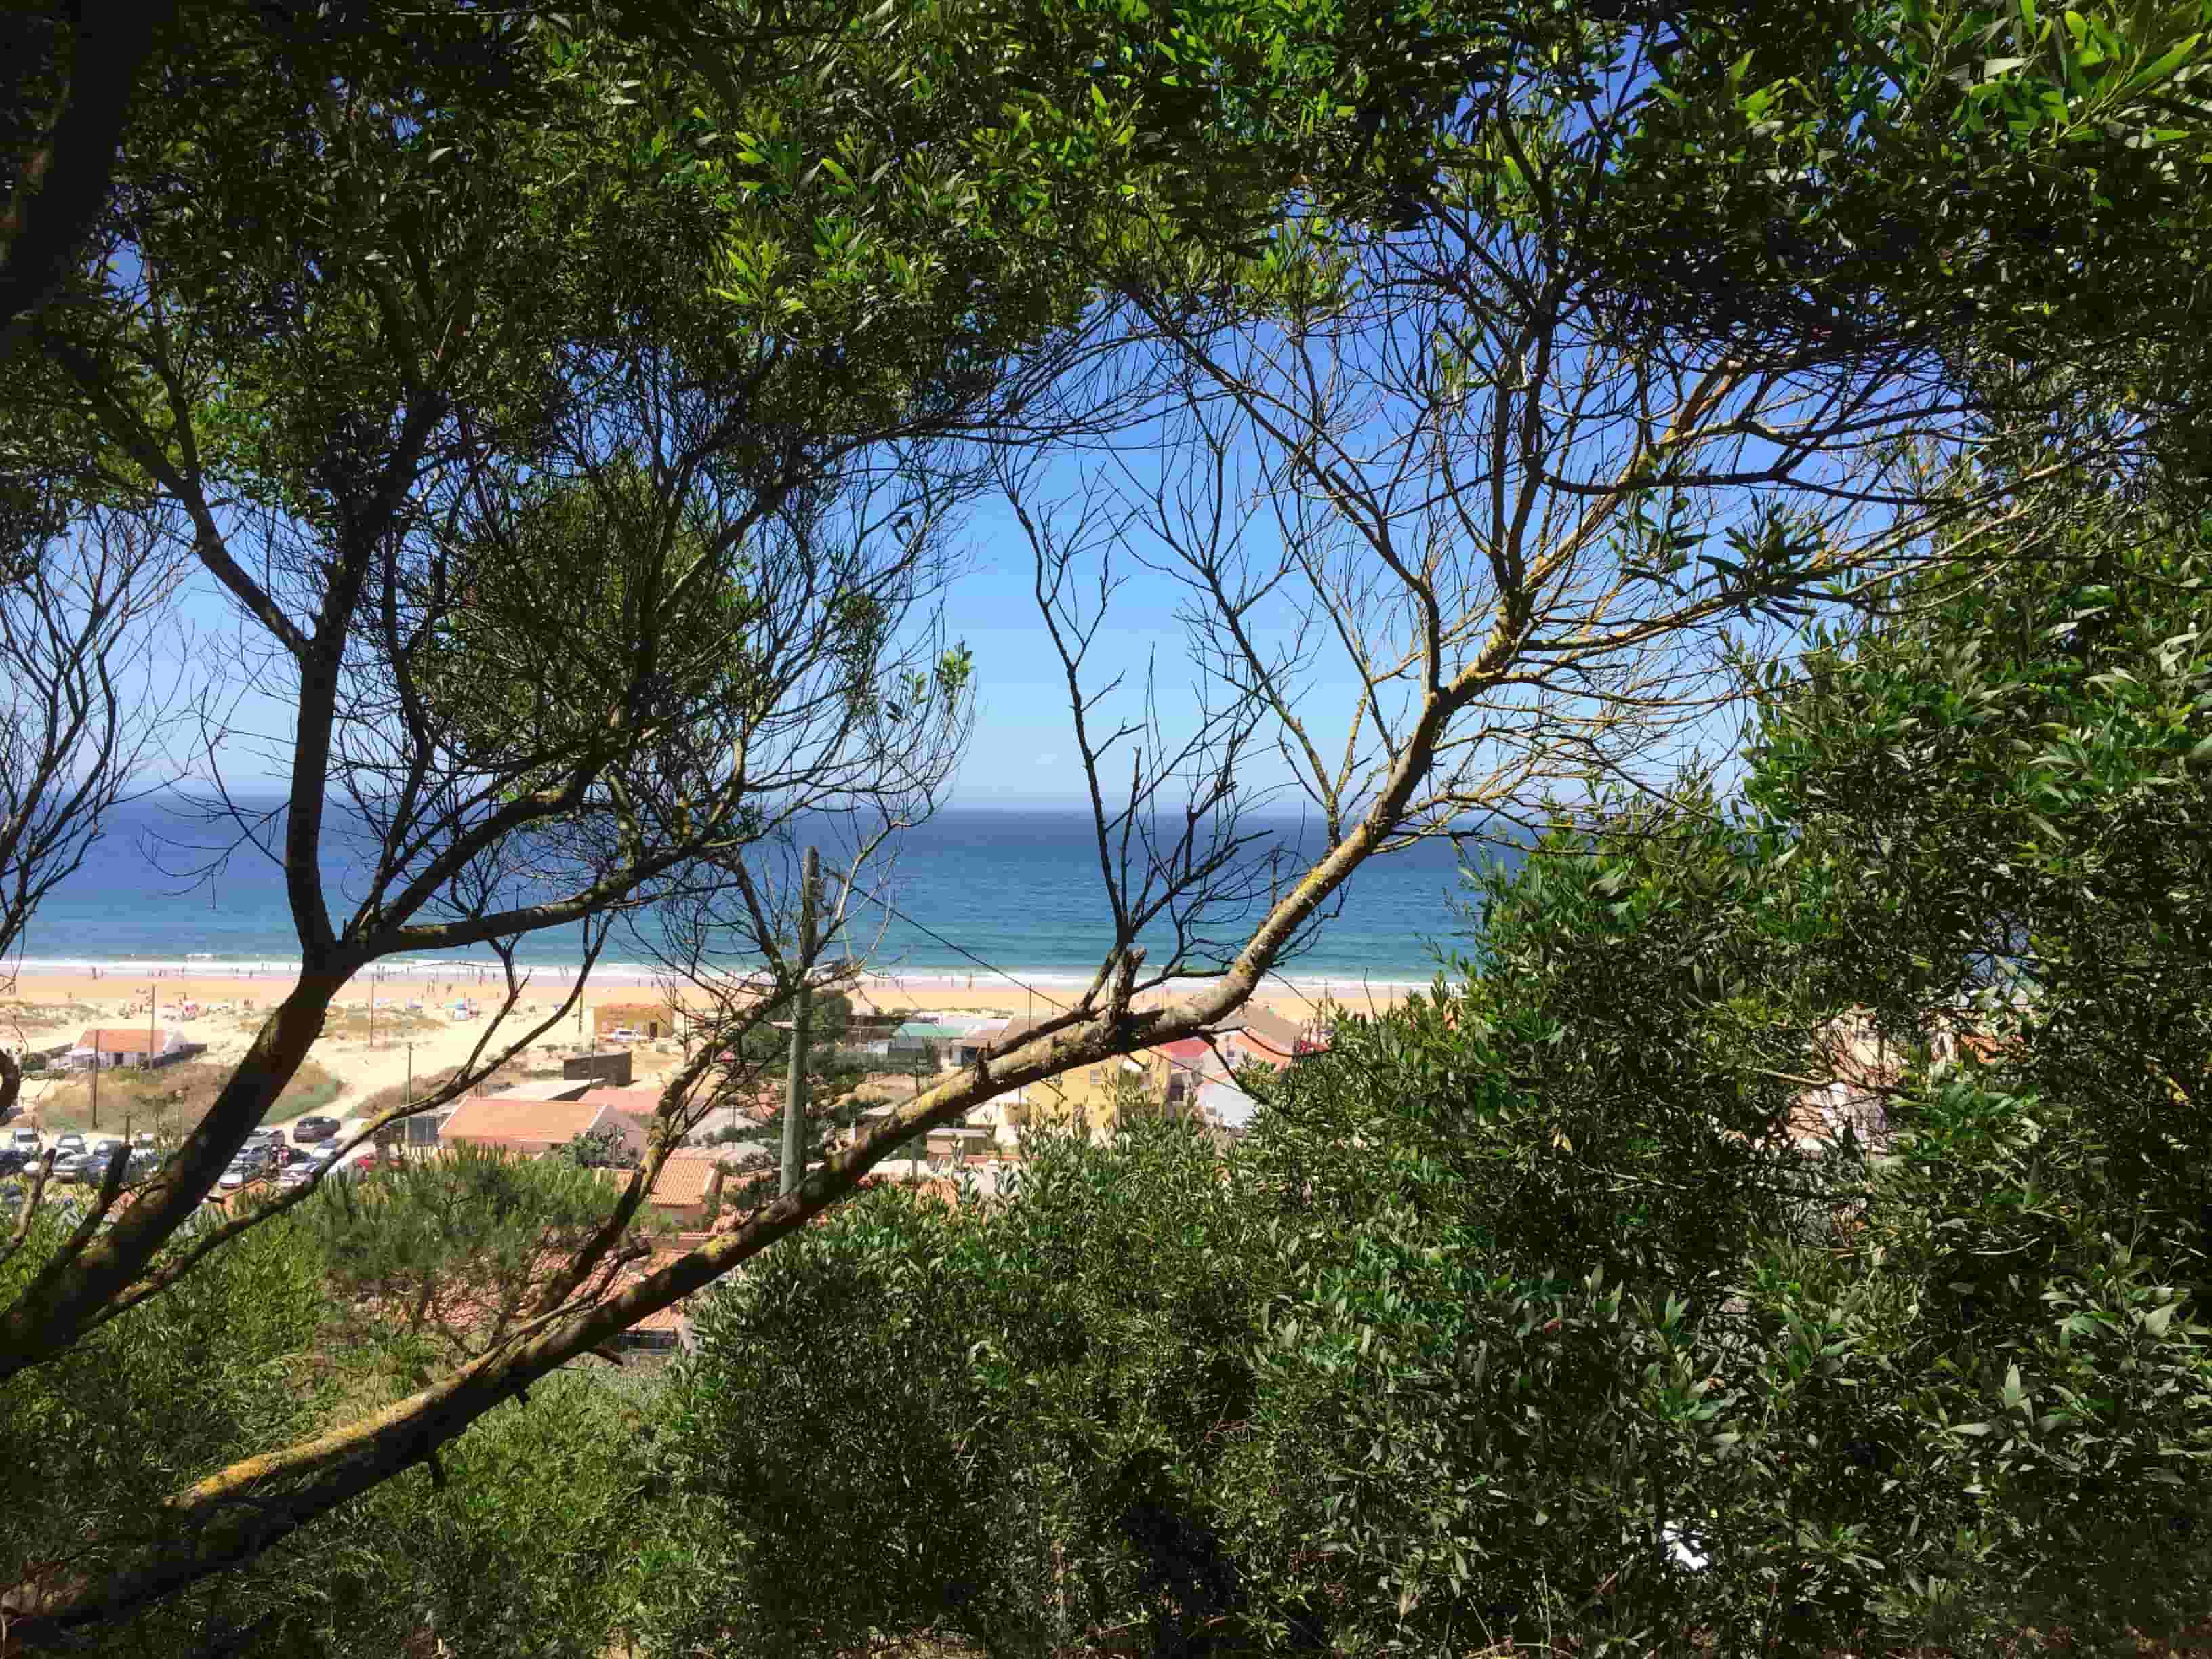 View from the beach fonte da telha